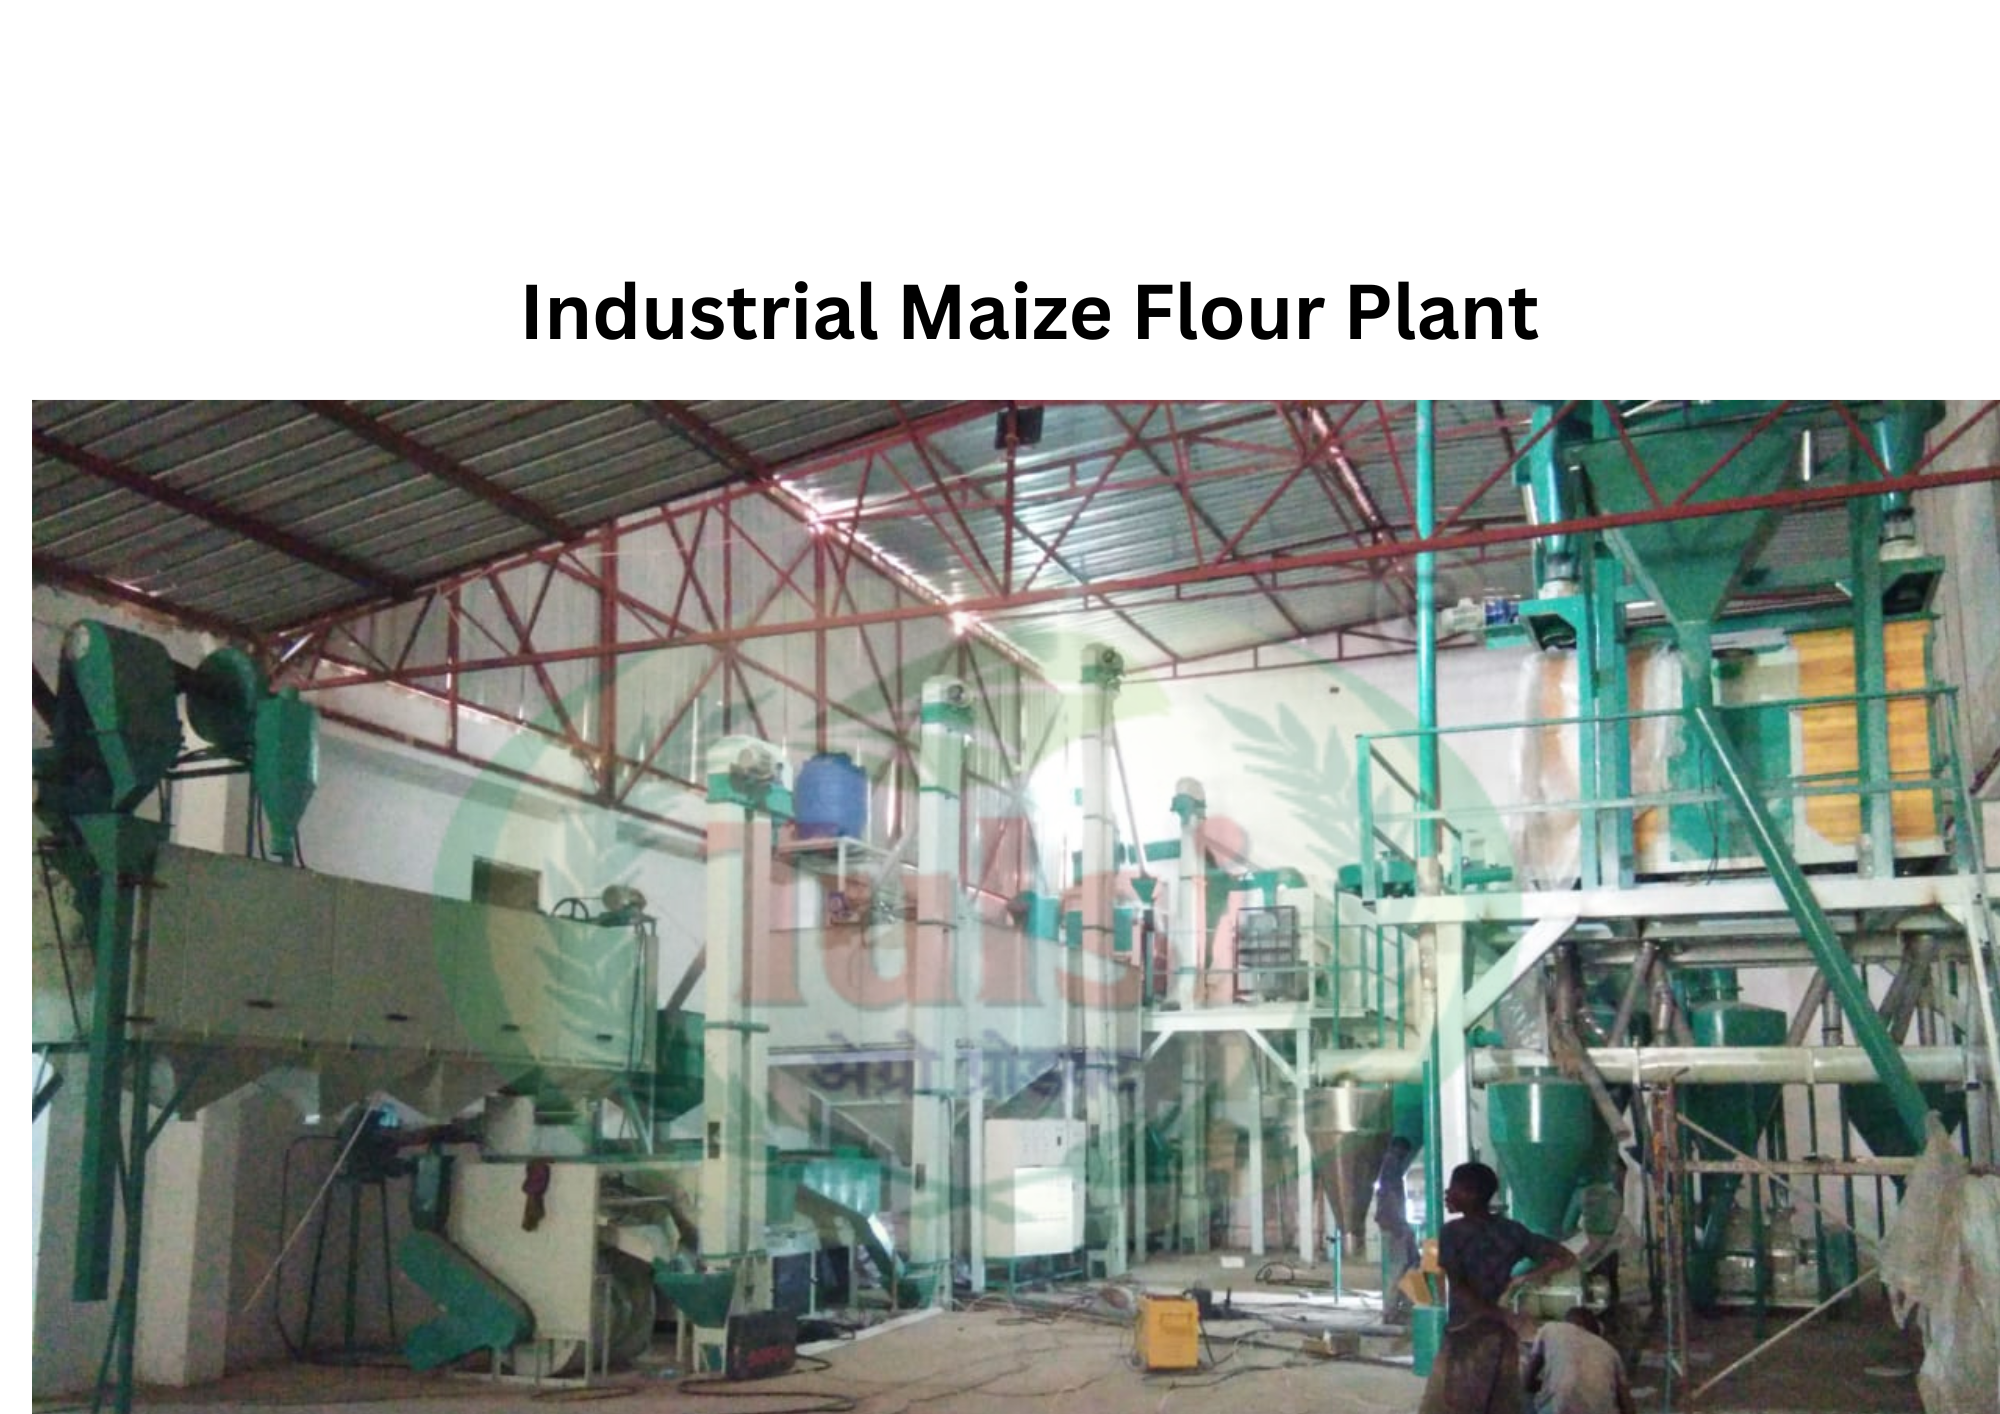 Industrial Maize Flour Plant